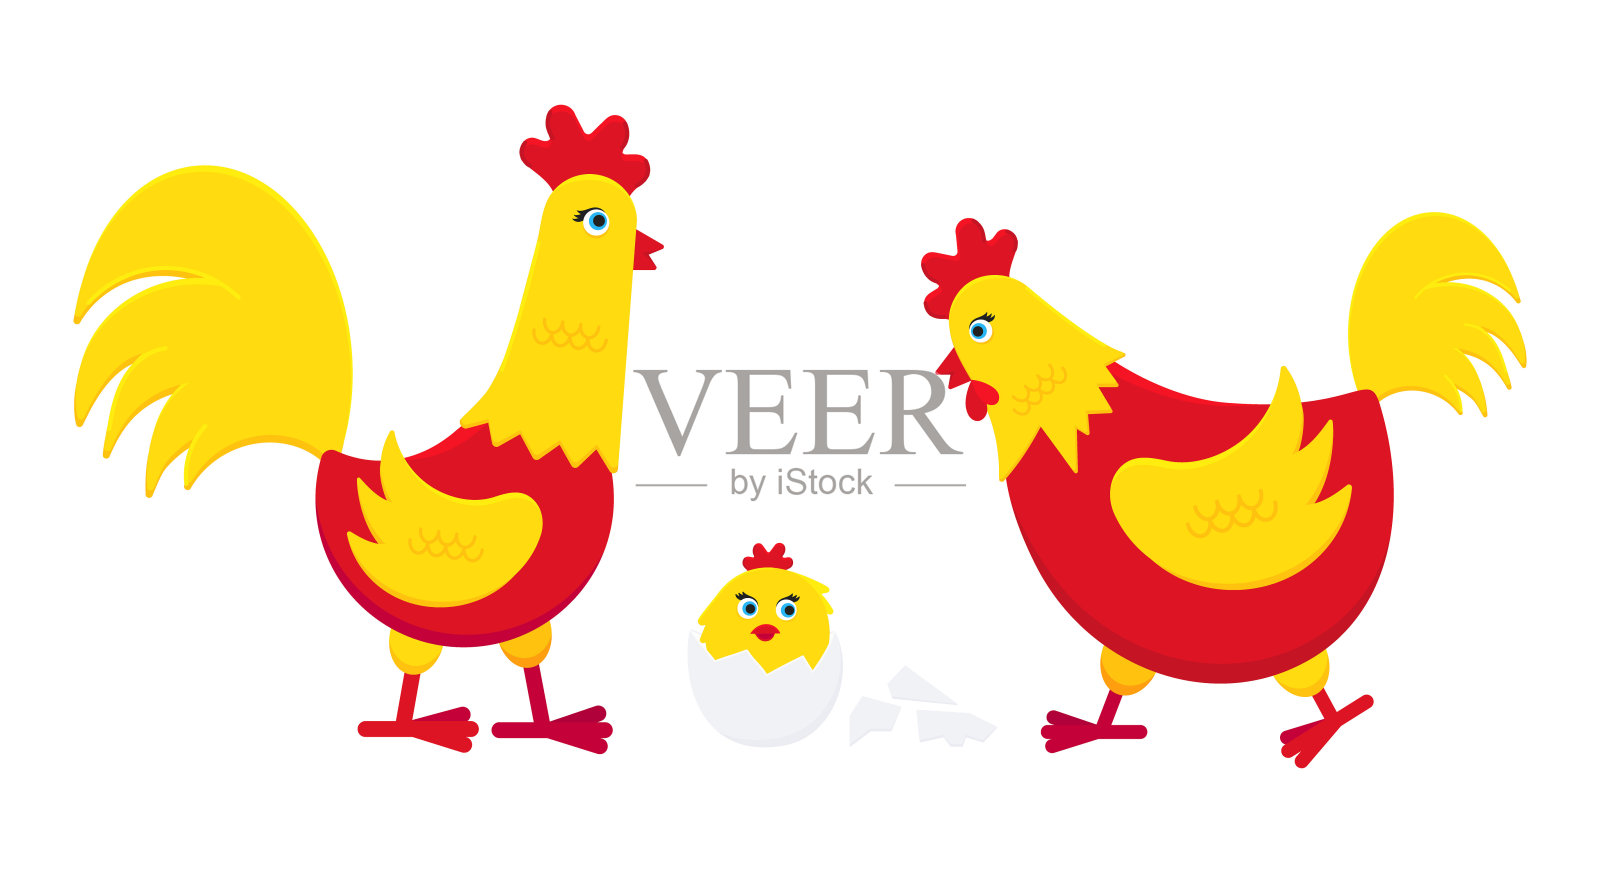 黄鸡配红鸡碎蛋和公鸡扁鸡设计矢量插画。鸡是农场家禽的象征符号。被隔离在白色背景上的家禽。插画图片素材